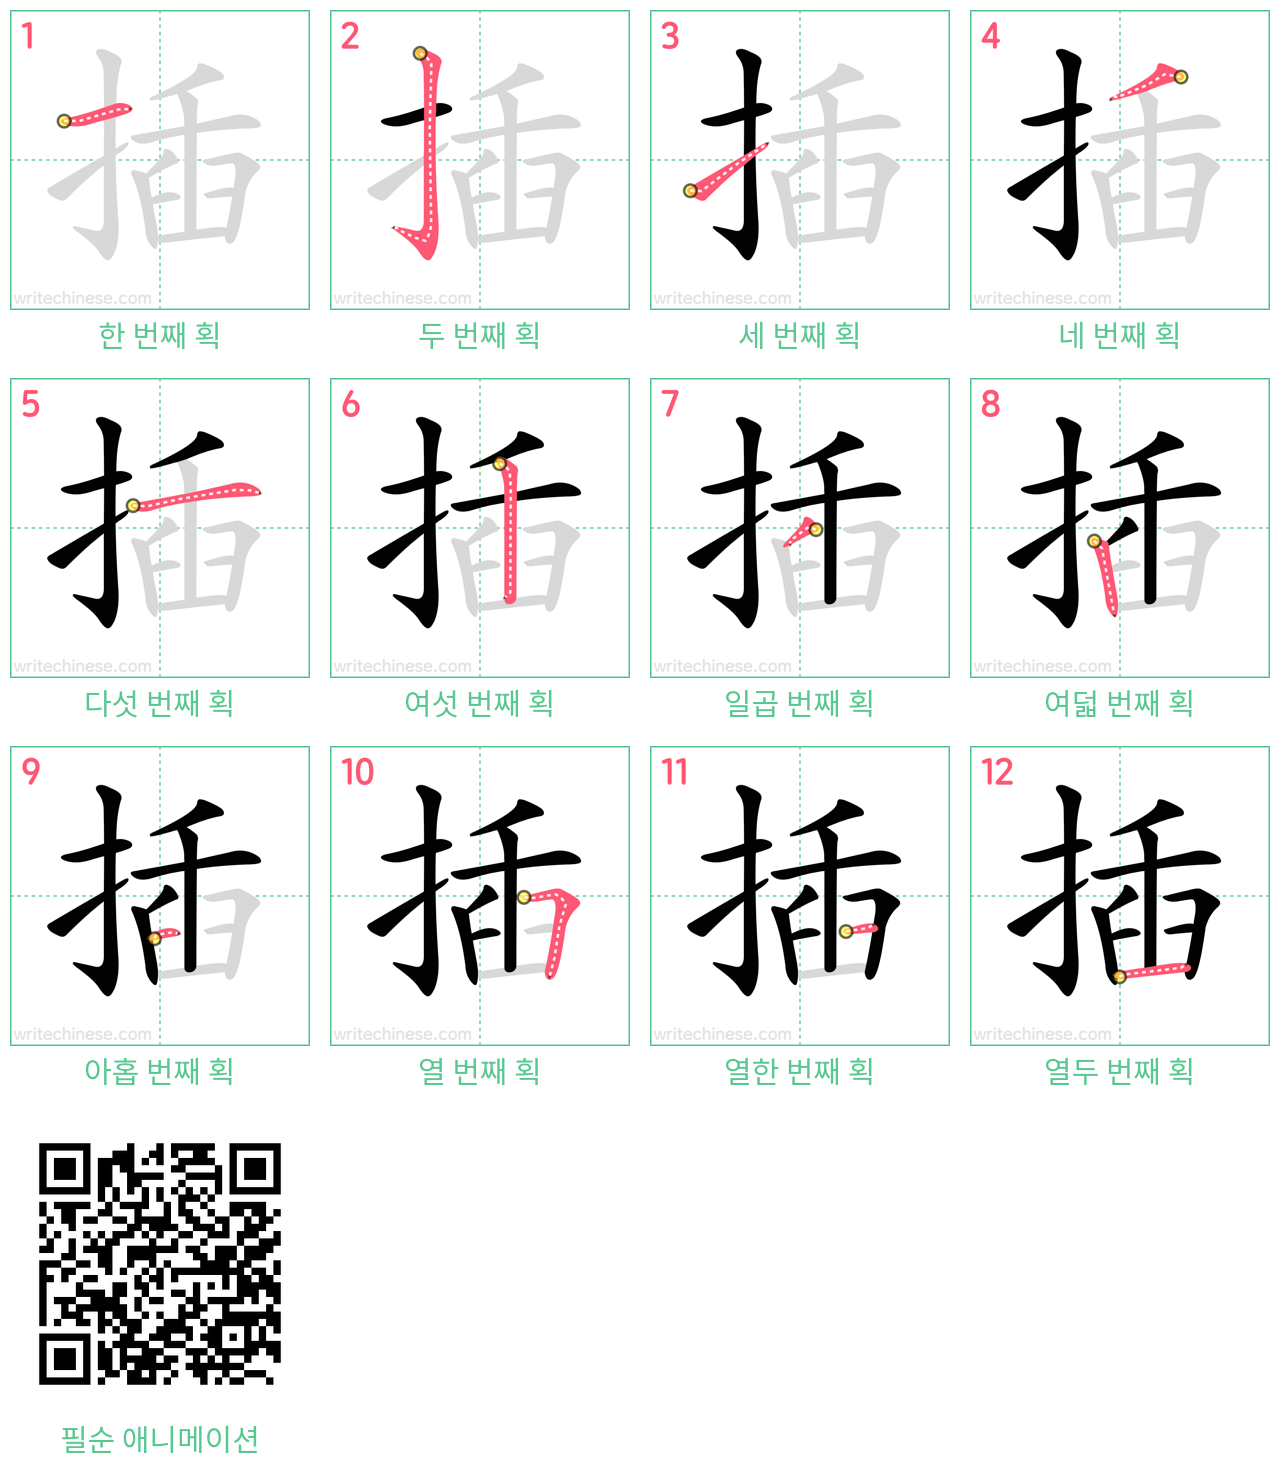 插 step-by-step stroke order diagrams